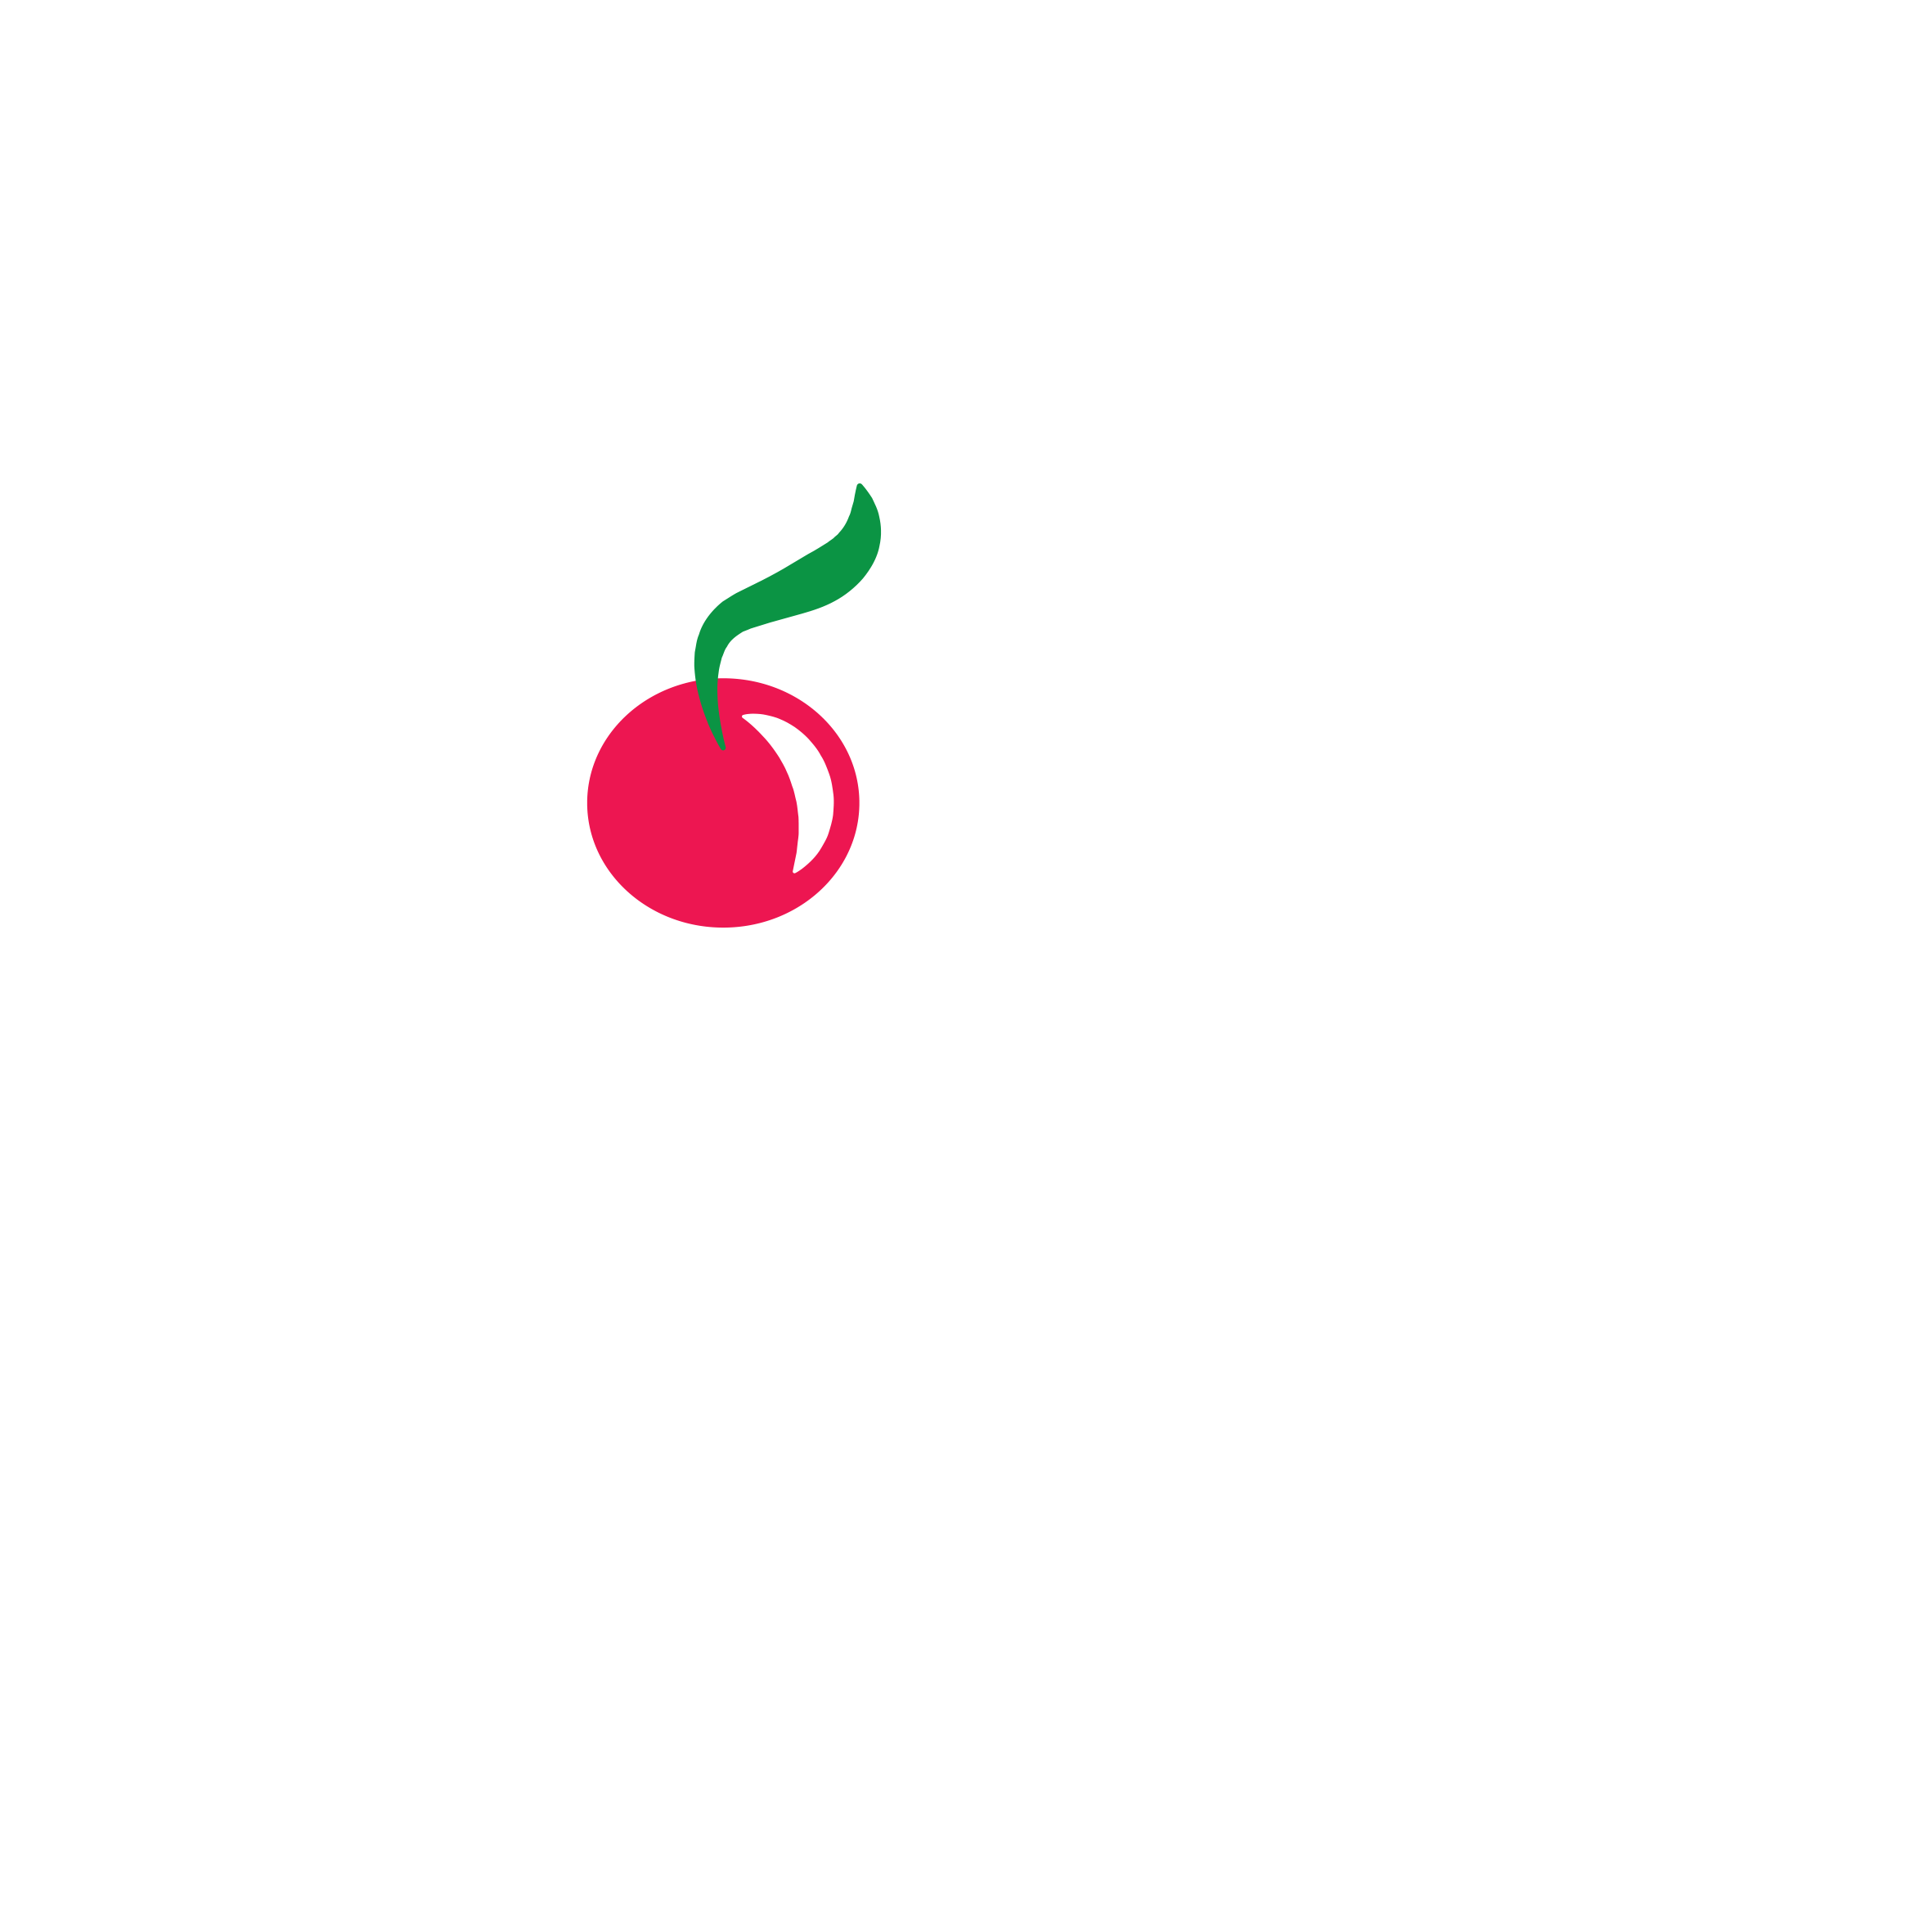 Gijoka